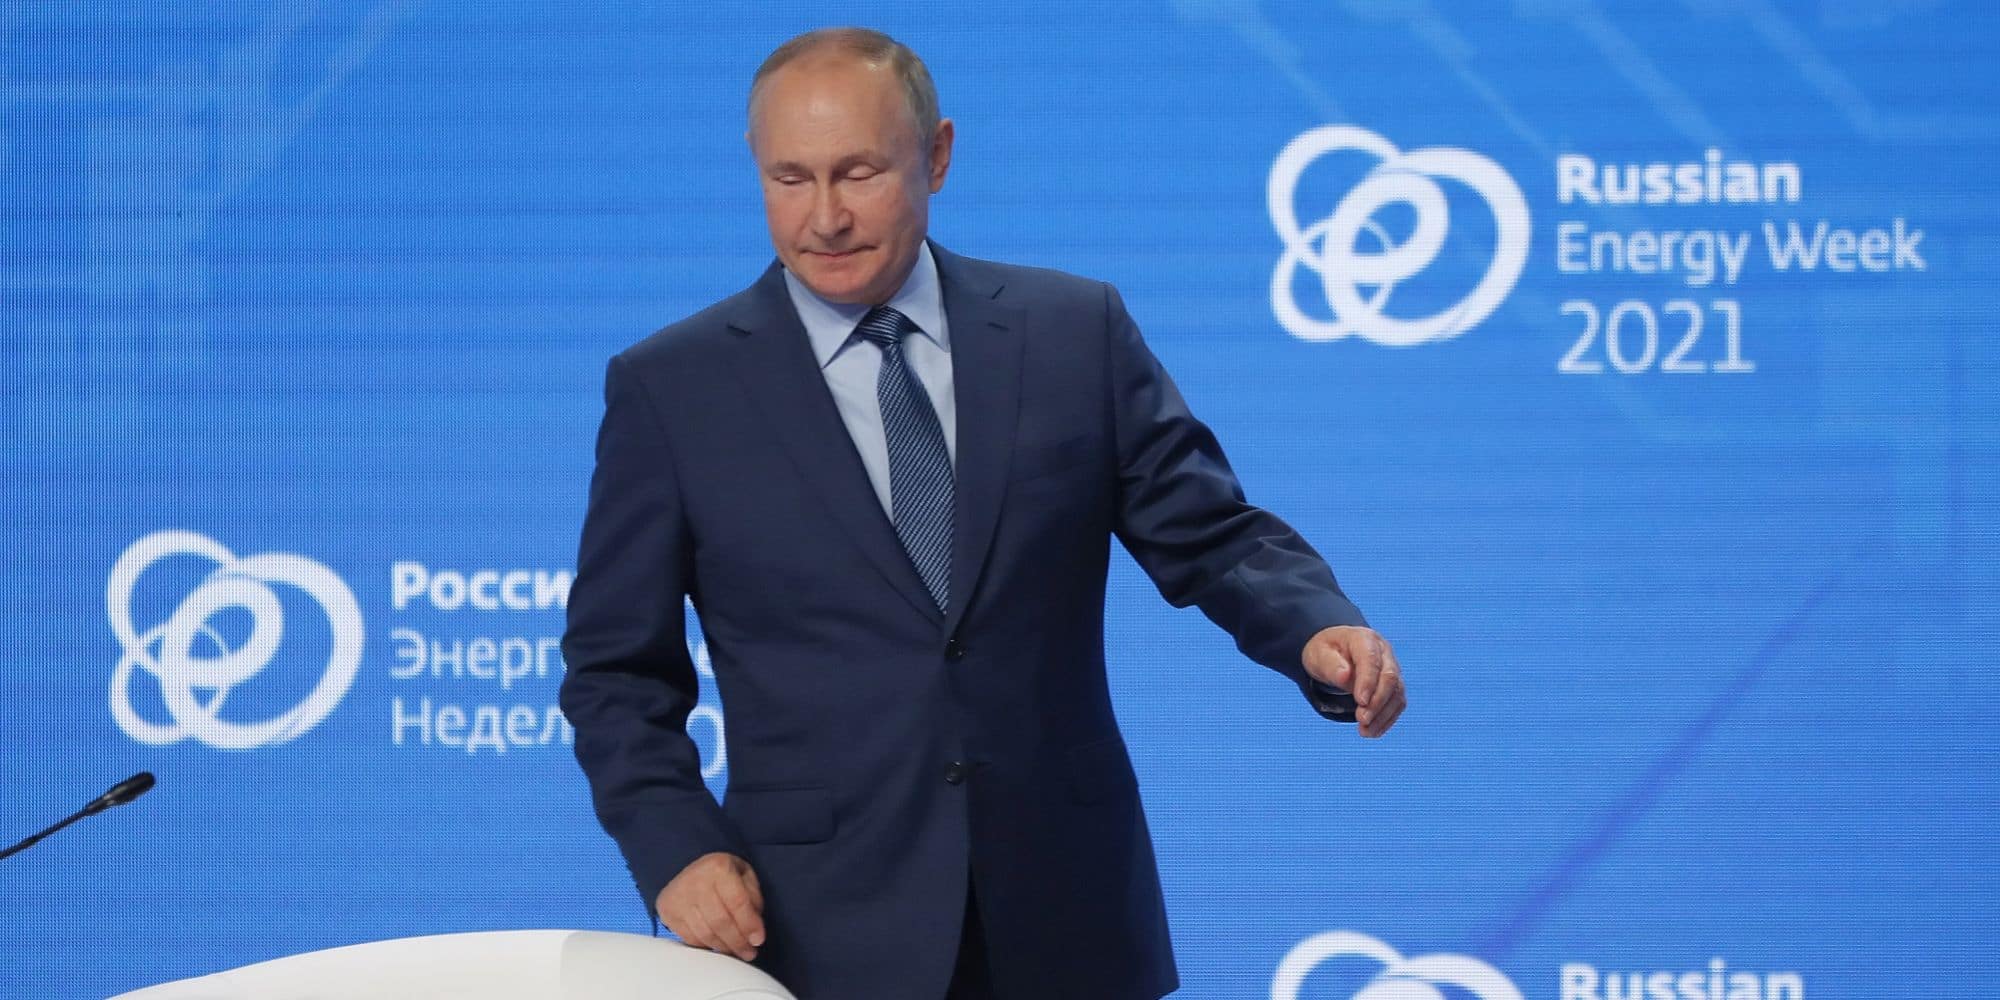 O Βλαντιμίρ Πούτιν στην εβδομάδα ενέργειας στη Ρωσία